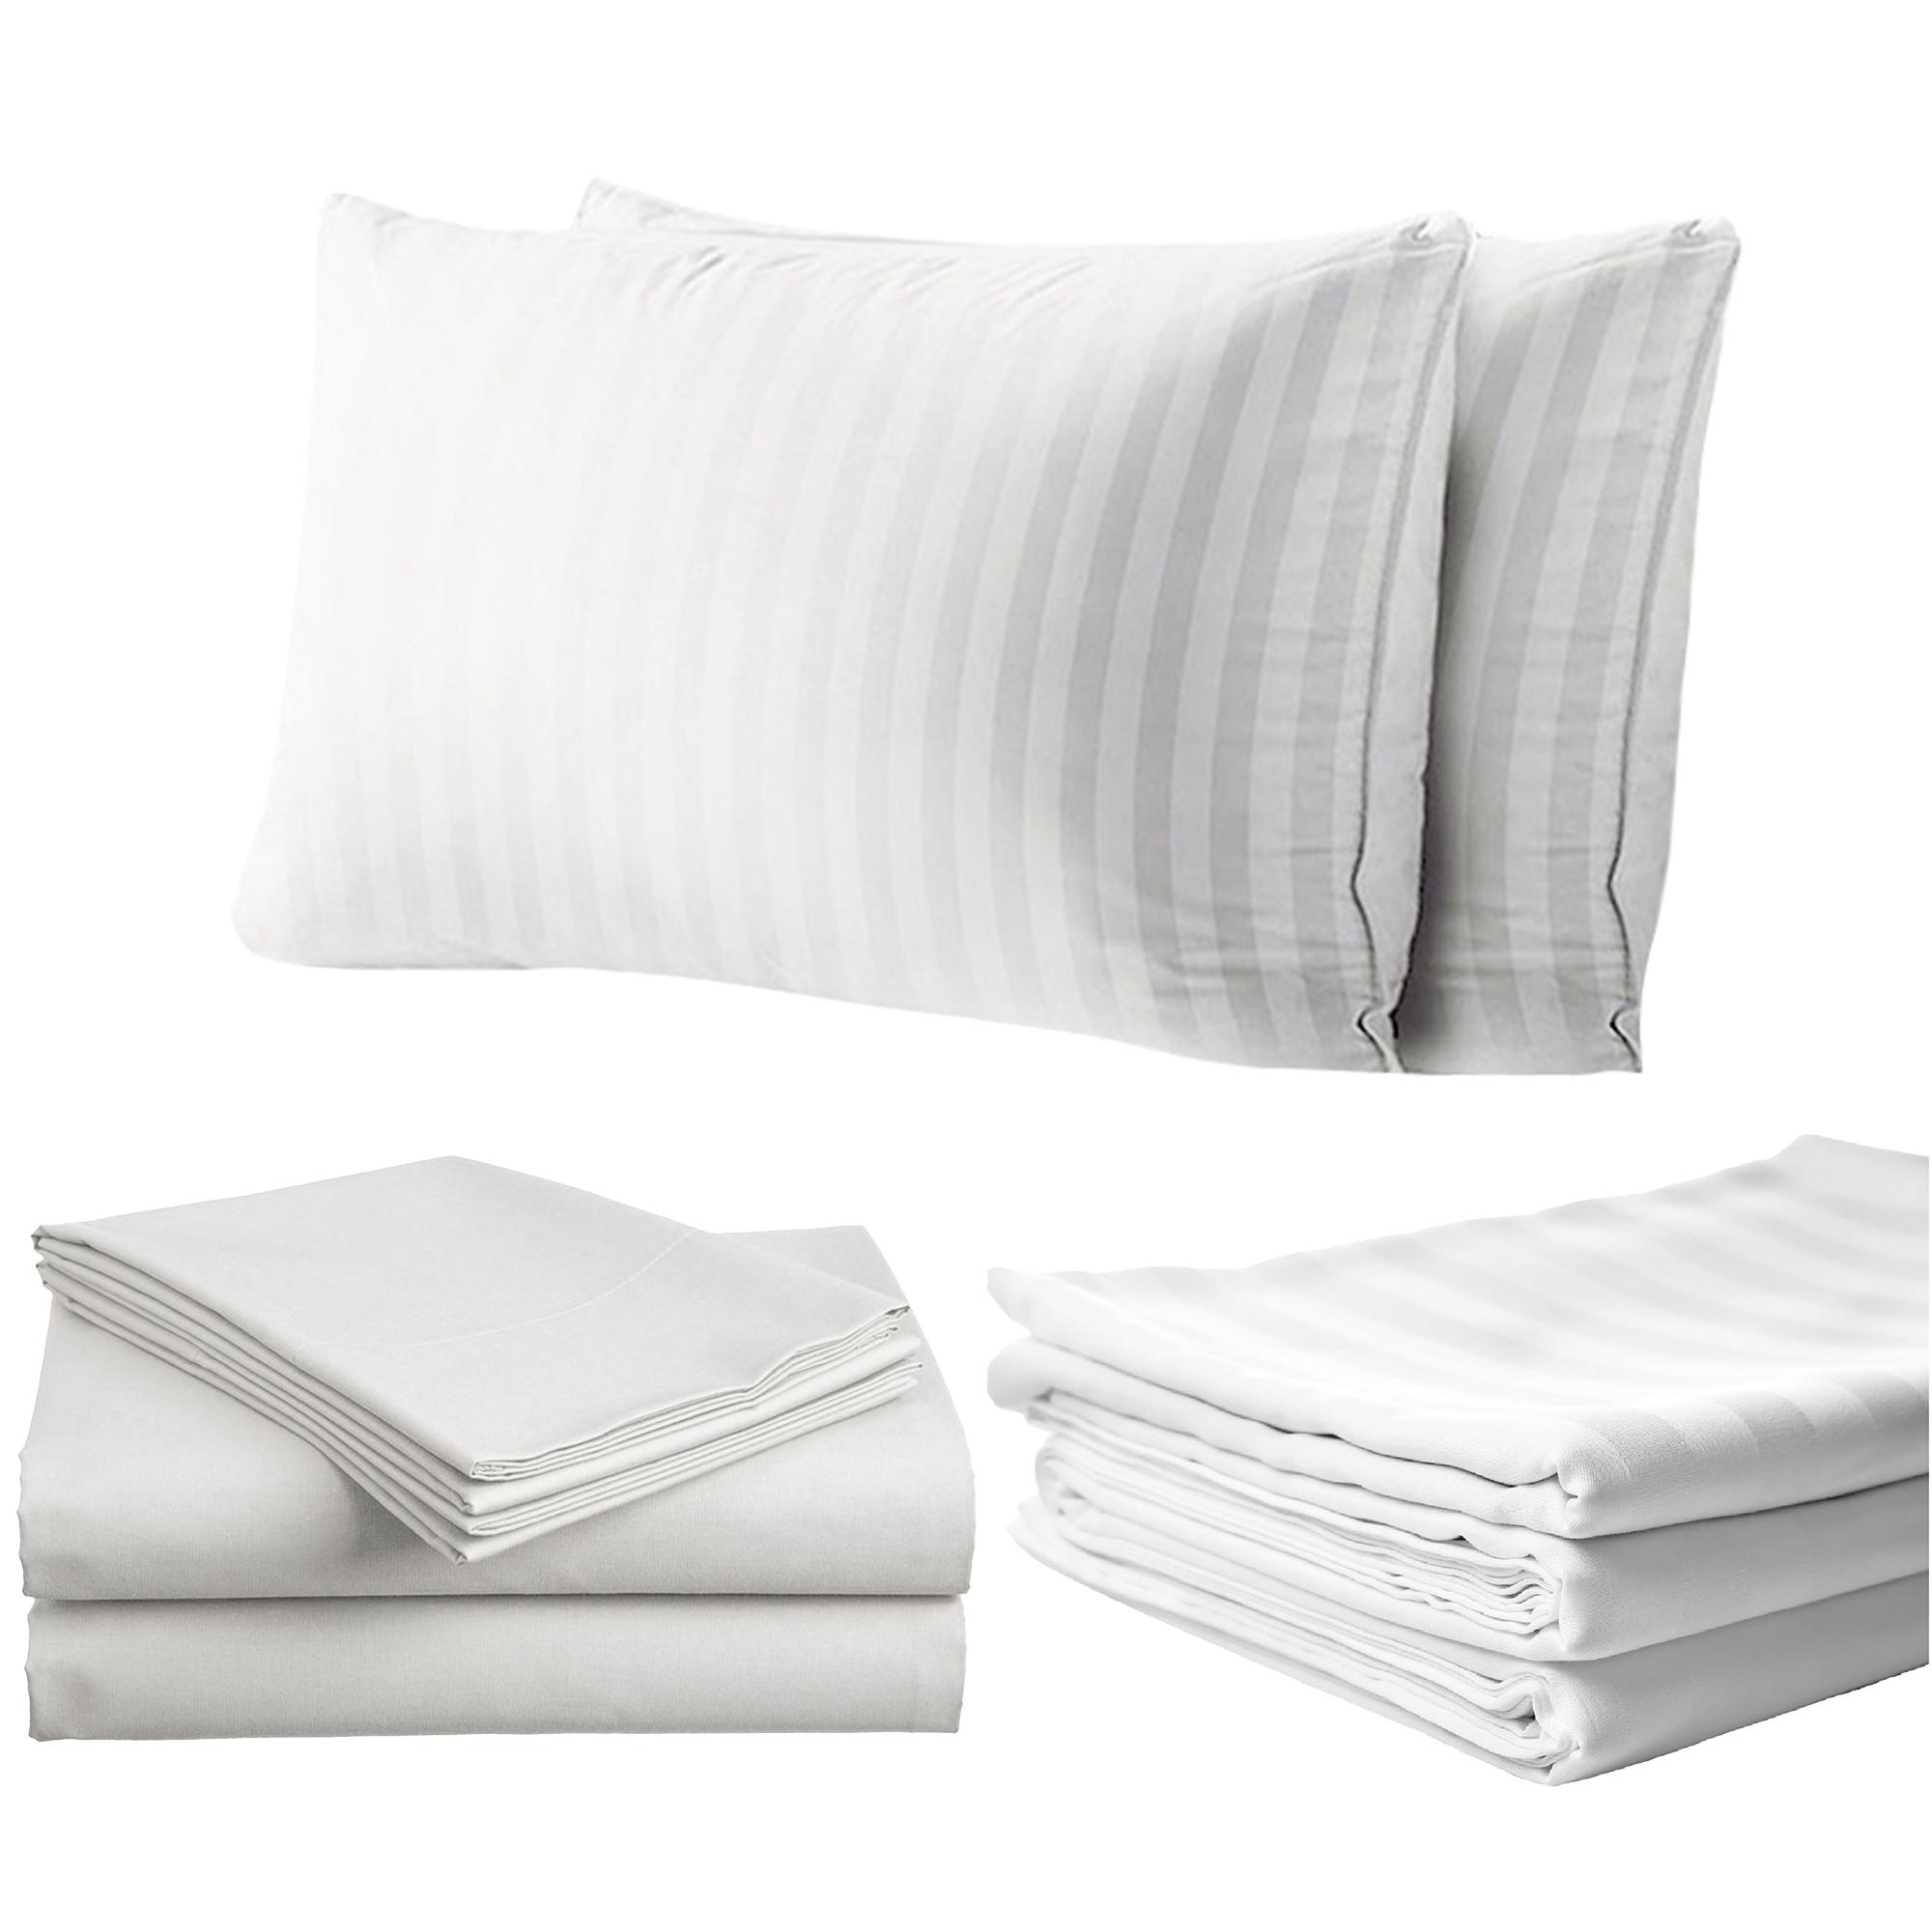 Horeca/HORECA PRODUCTS/Bed Linens